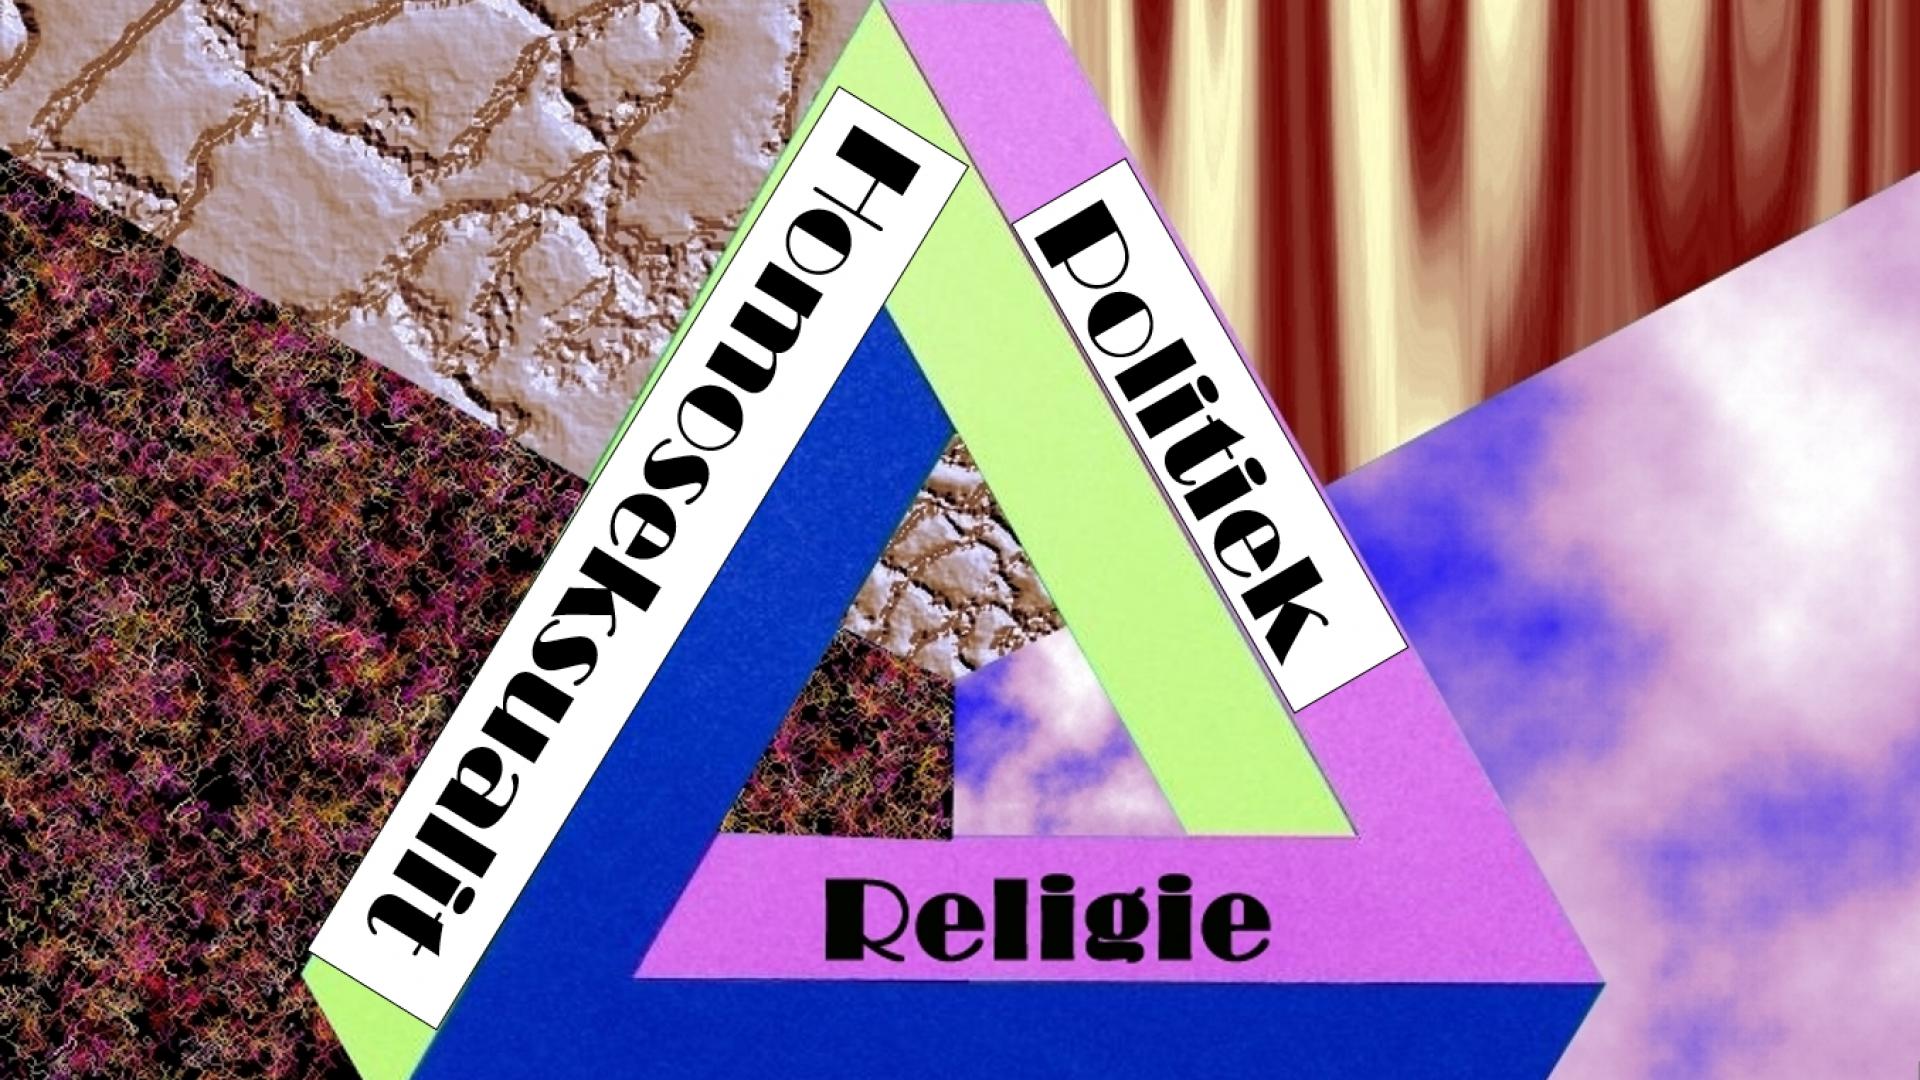 Een (onmogelijke) driehoek met de teksten Religie, Homoseksualiteit, Politiek op de zijden